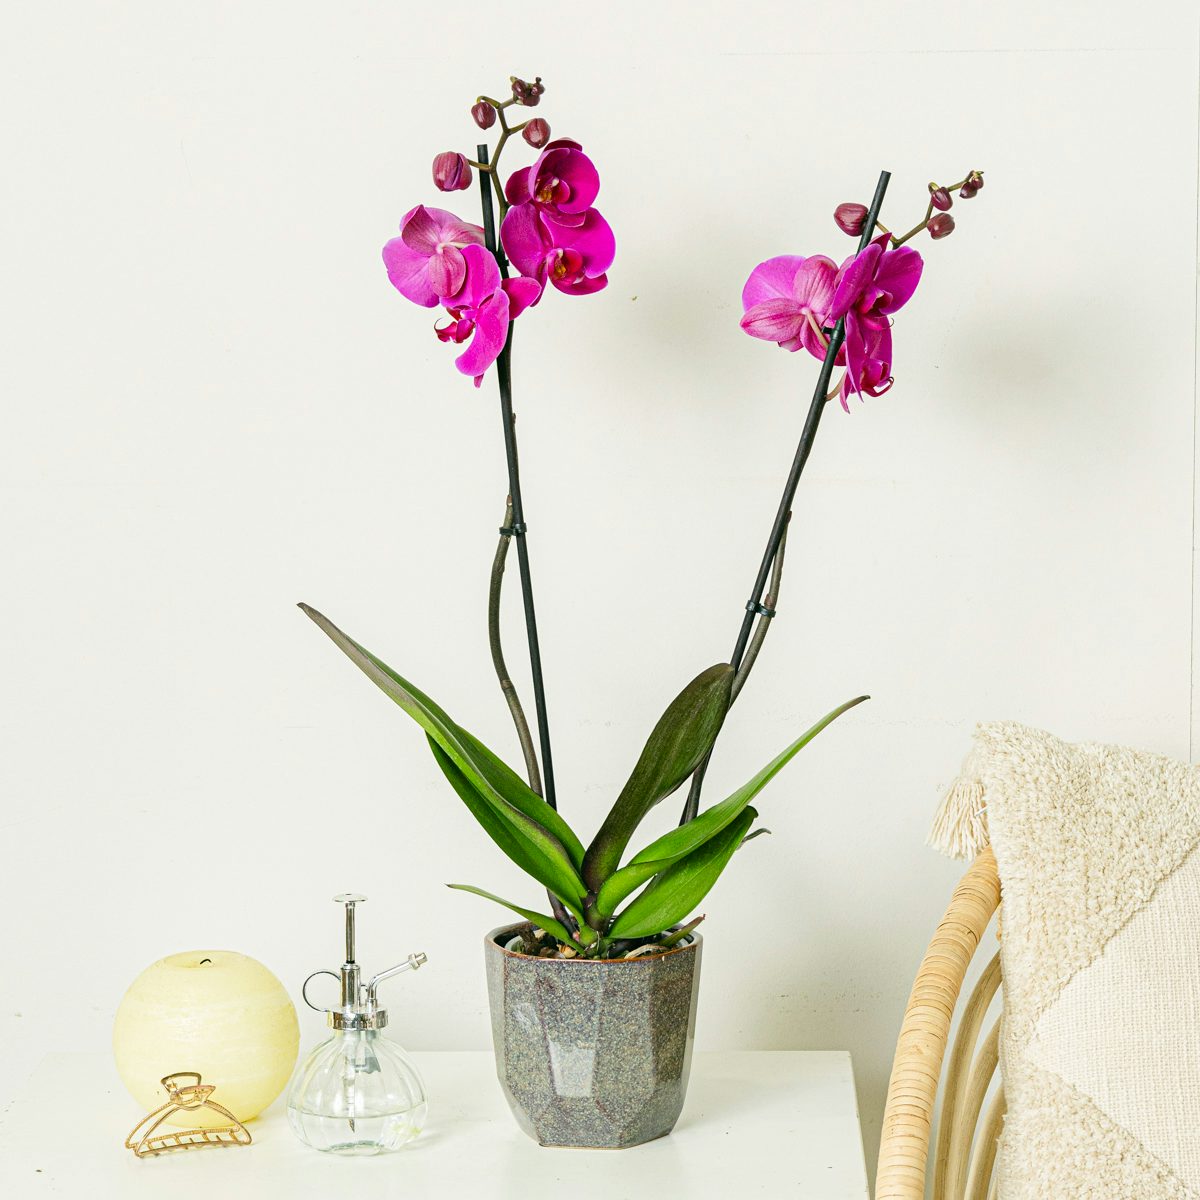 Purple Orchid - 60/70cm